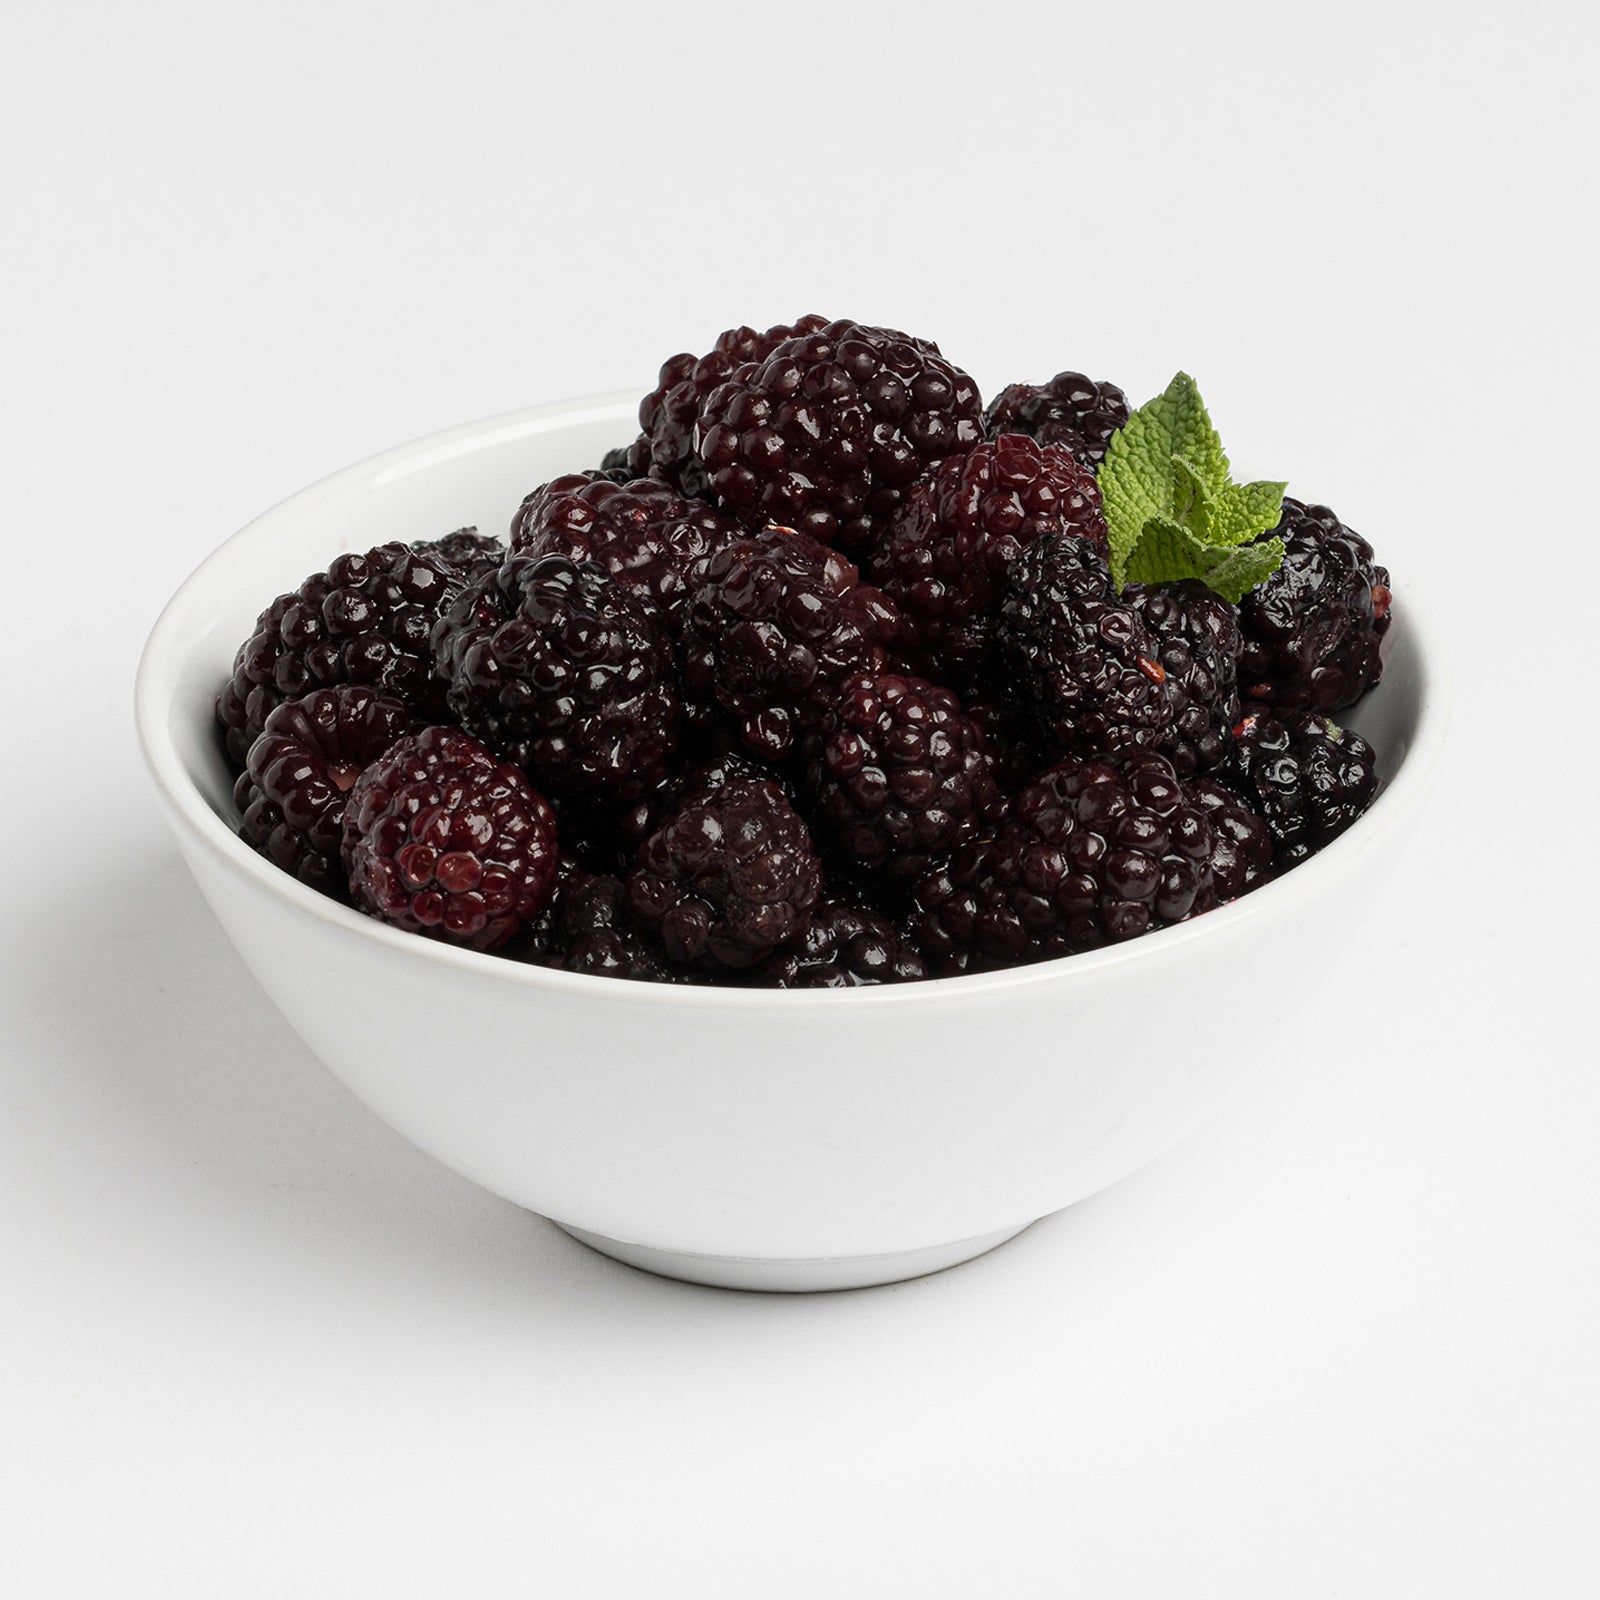 BELOW ZERO Blackberries